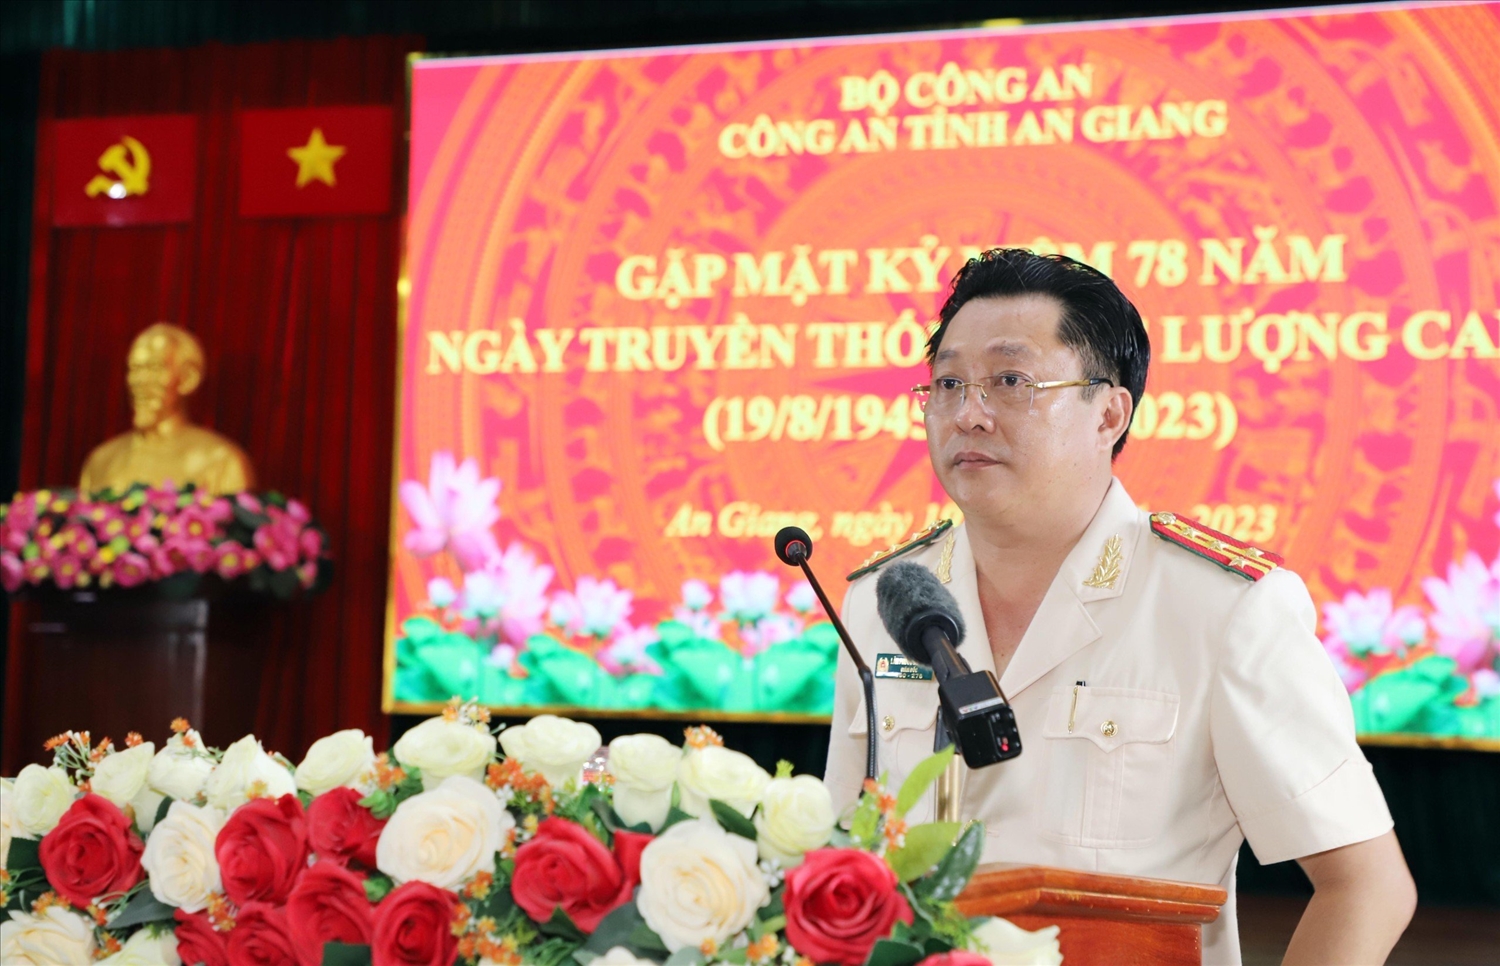 Đại tá Lâm Phước Nguyên, Giám đốc Công an tỉnh An Giang báo cáo tóm tắt kết quả nổi bật mà Công an tỉnh An Giang đạt được 